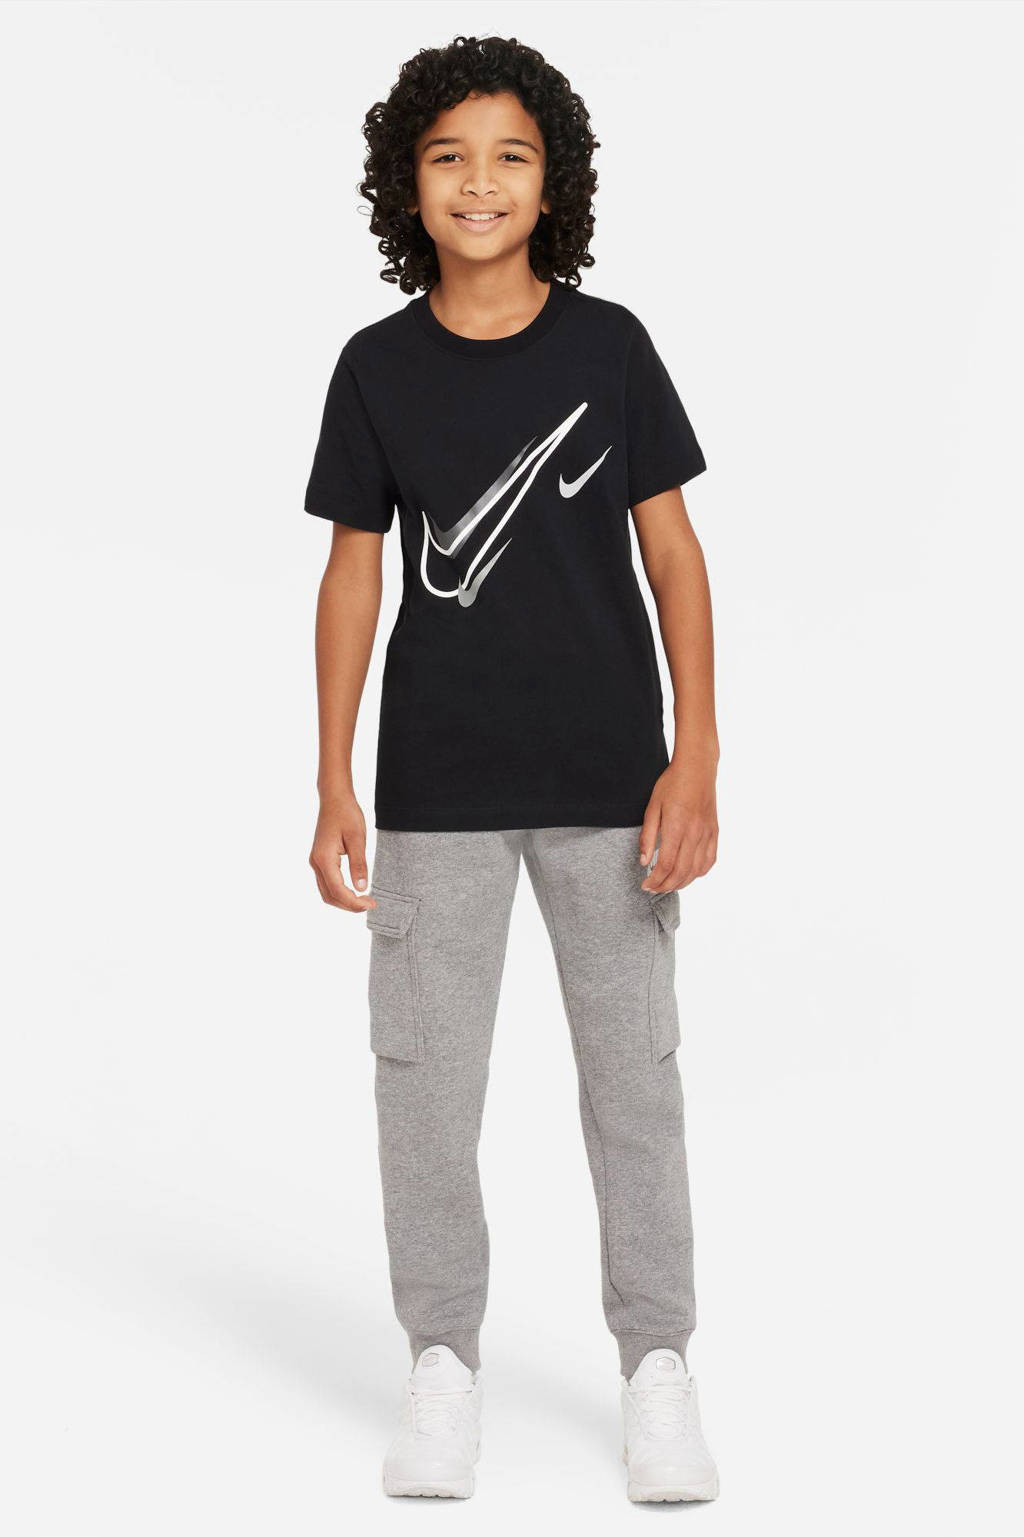 Nike T-shirt zwart/wit